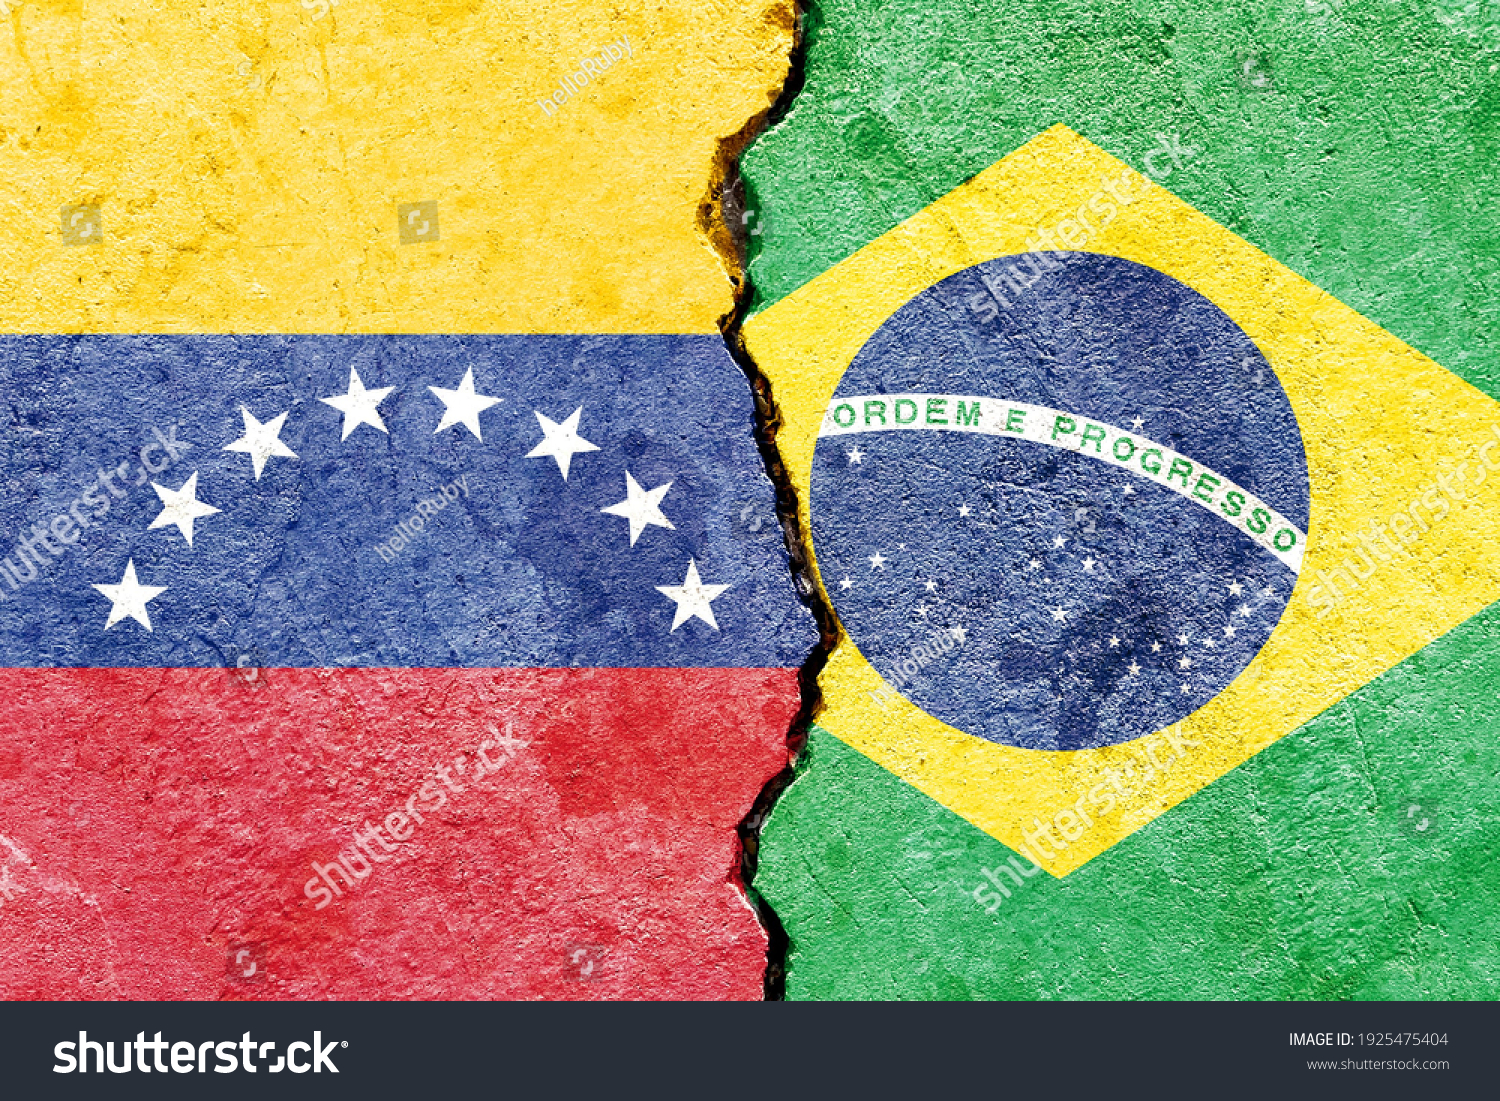 Vs brazil venezuela Venezuela vs